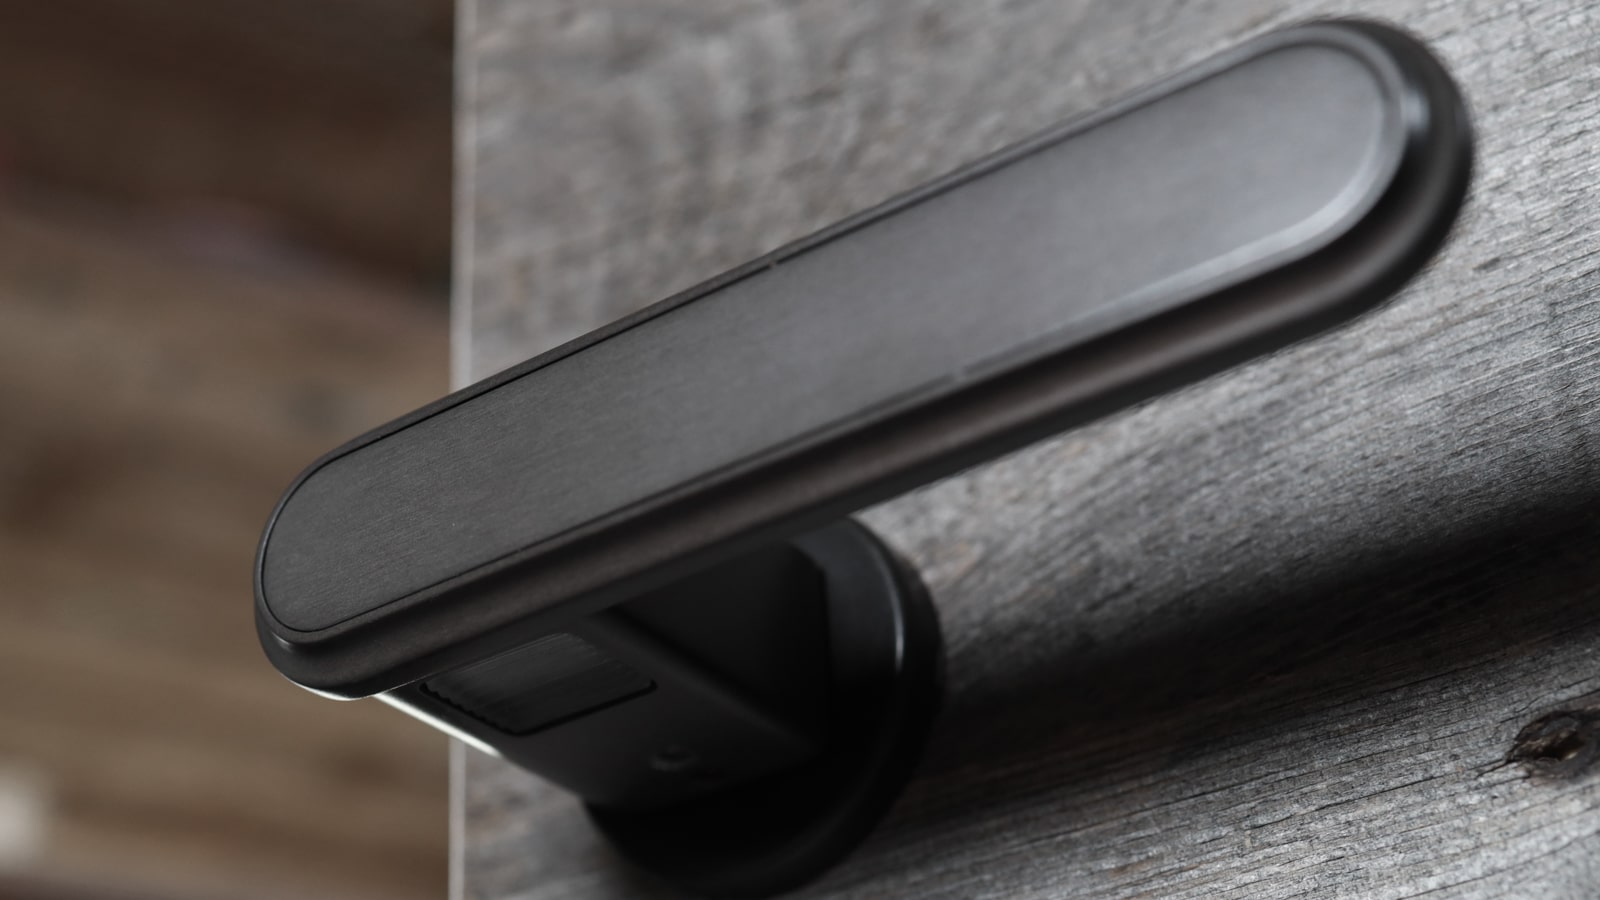 Oblò : the new design handle that enhances simplicity